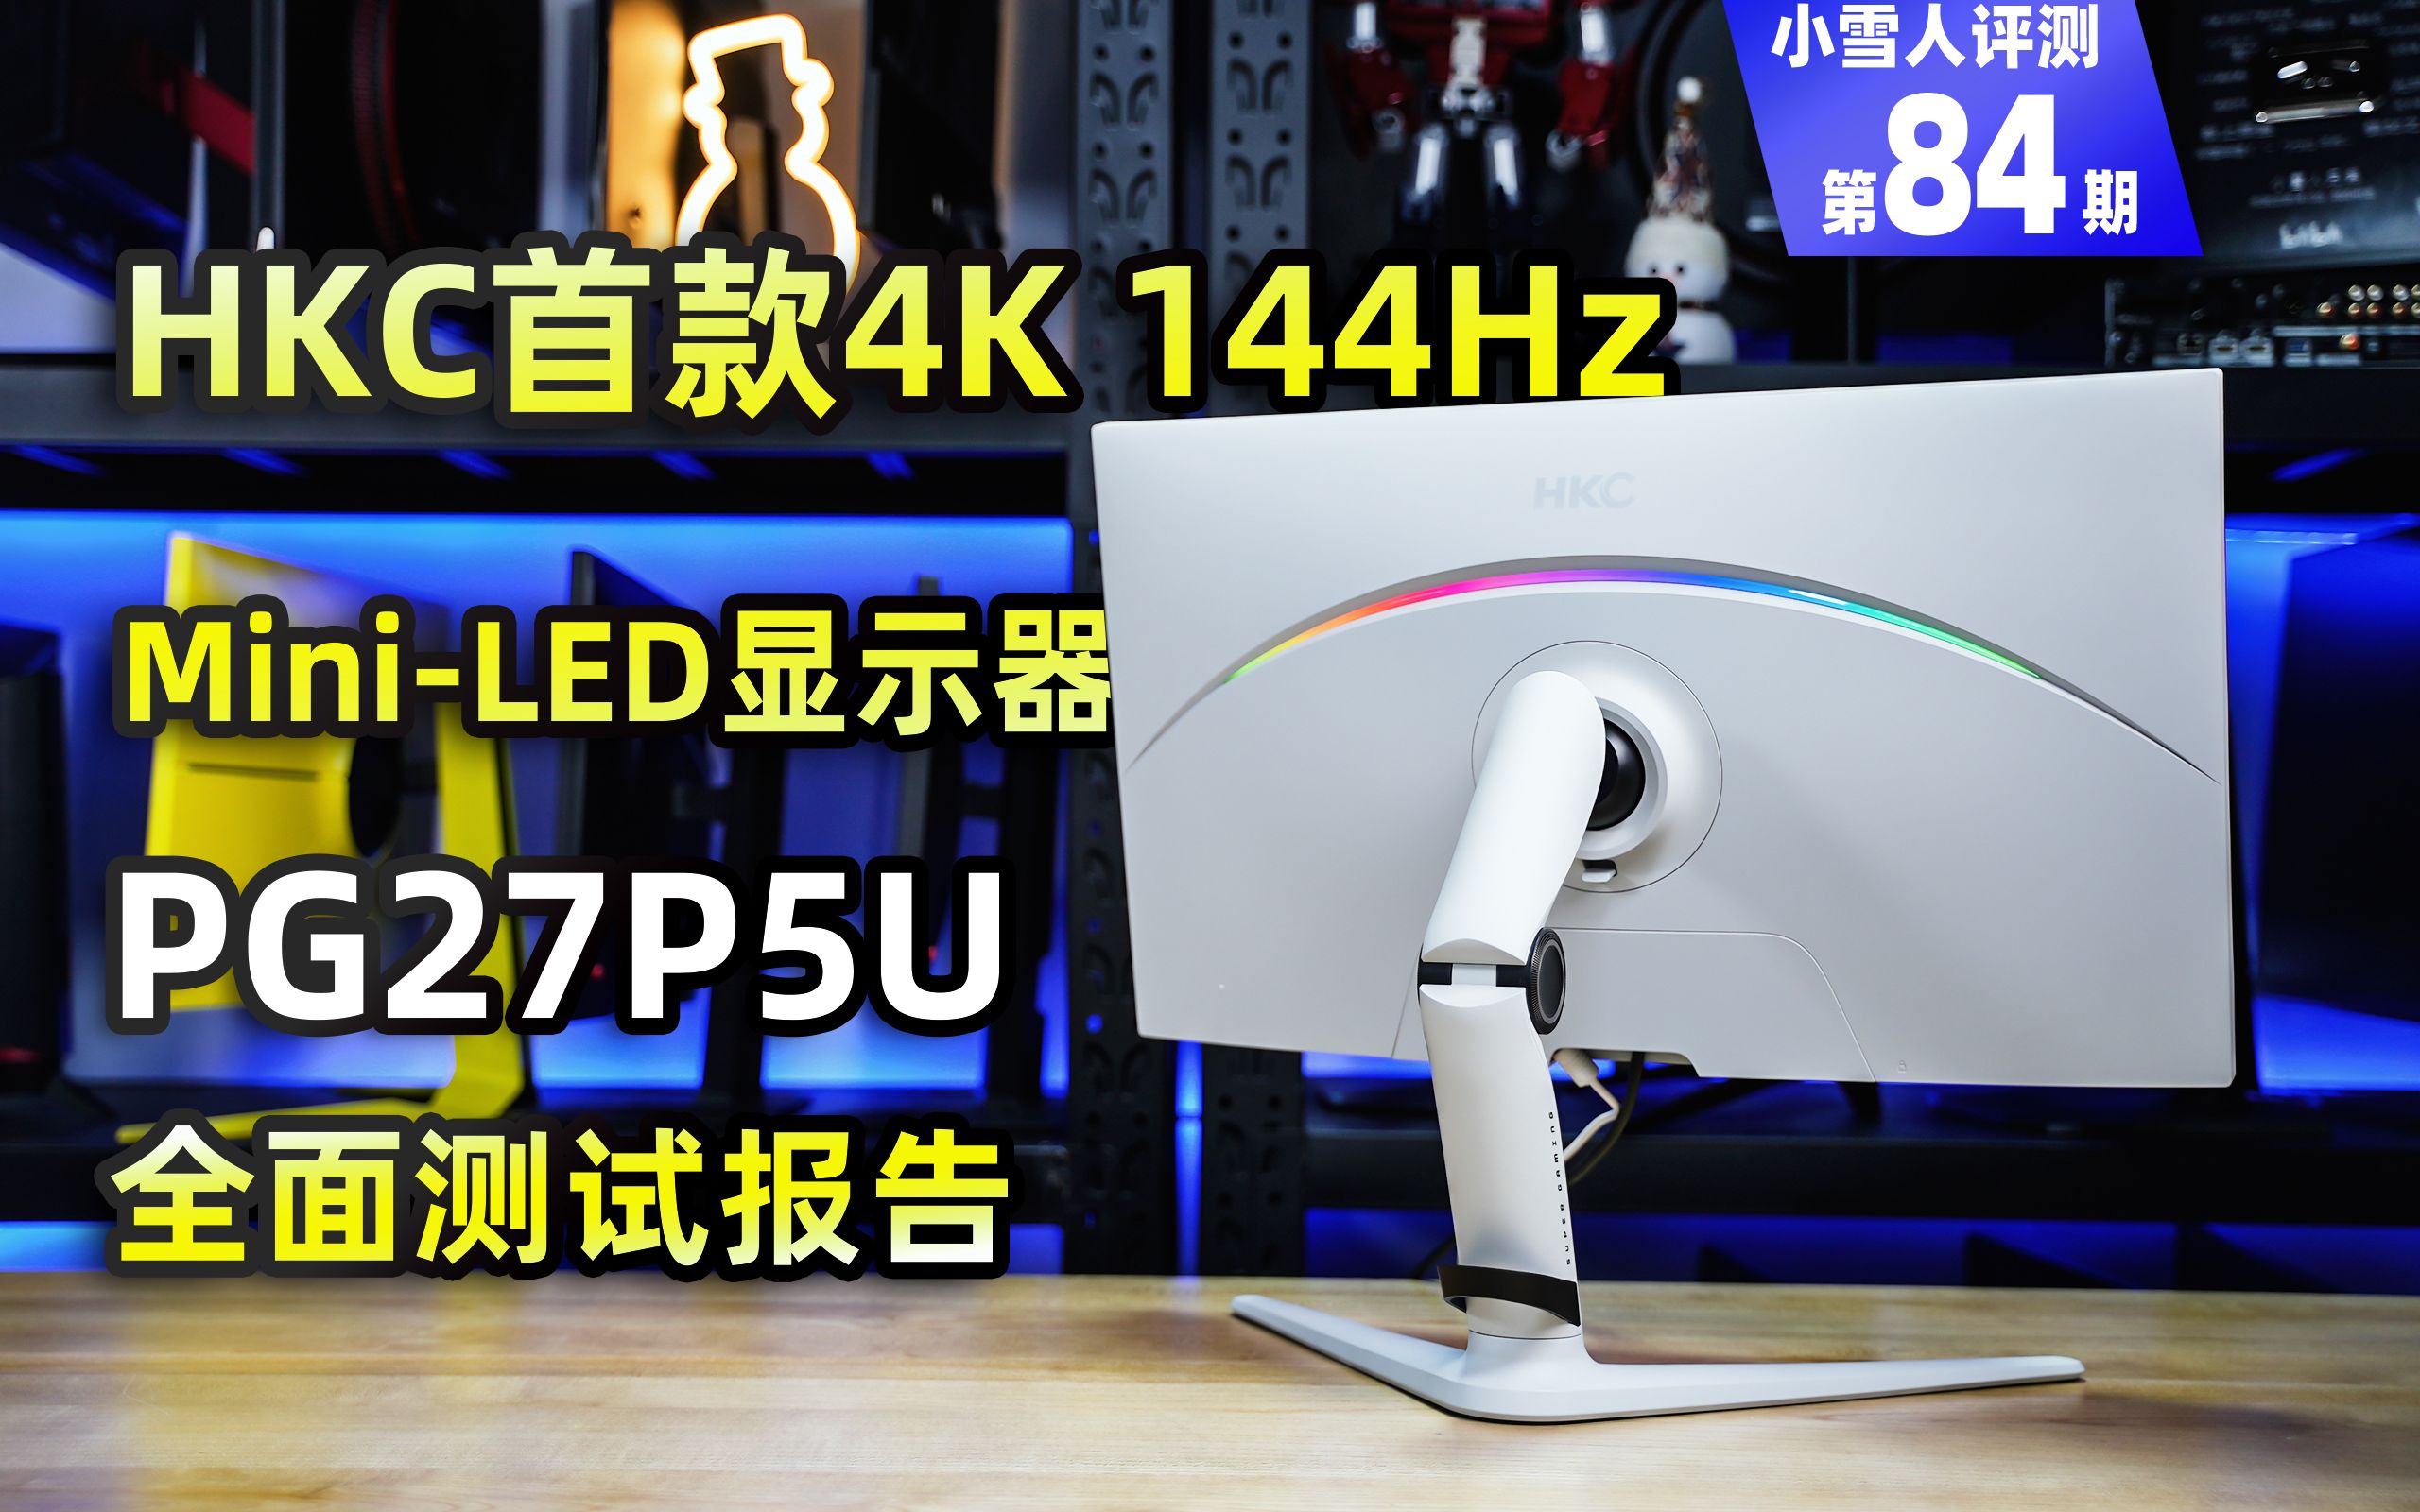 HKC首款4K 144Hz MiniLED显示器PG27P5U全面测试报告【小雪人评测第84期】